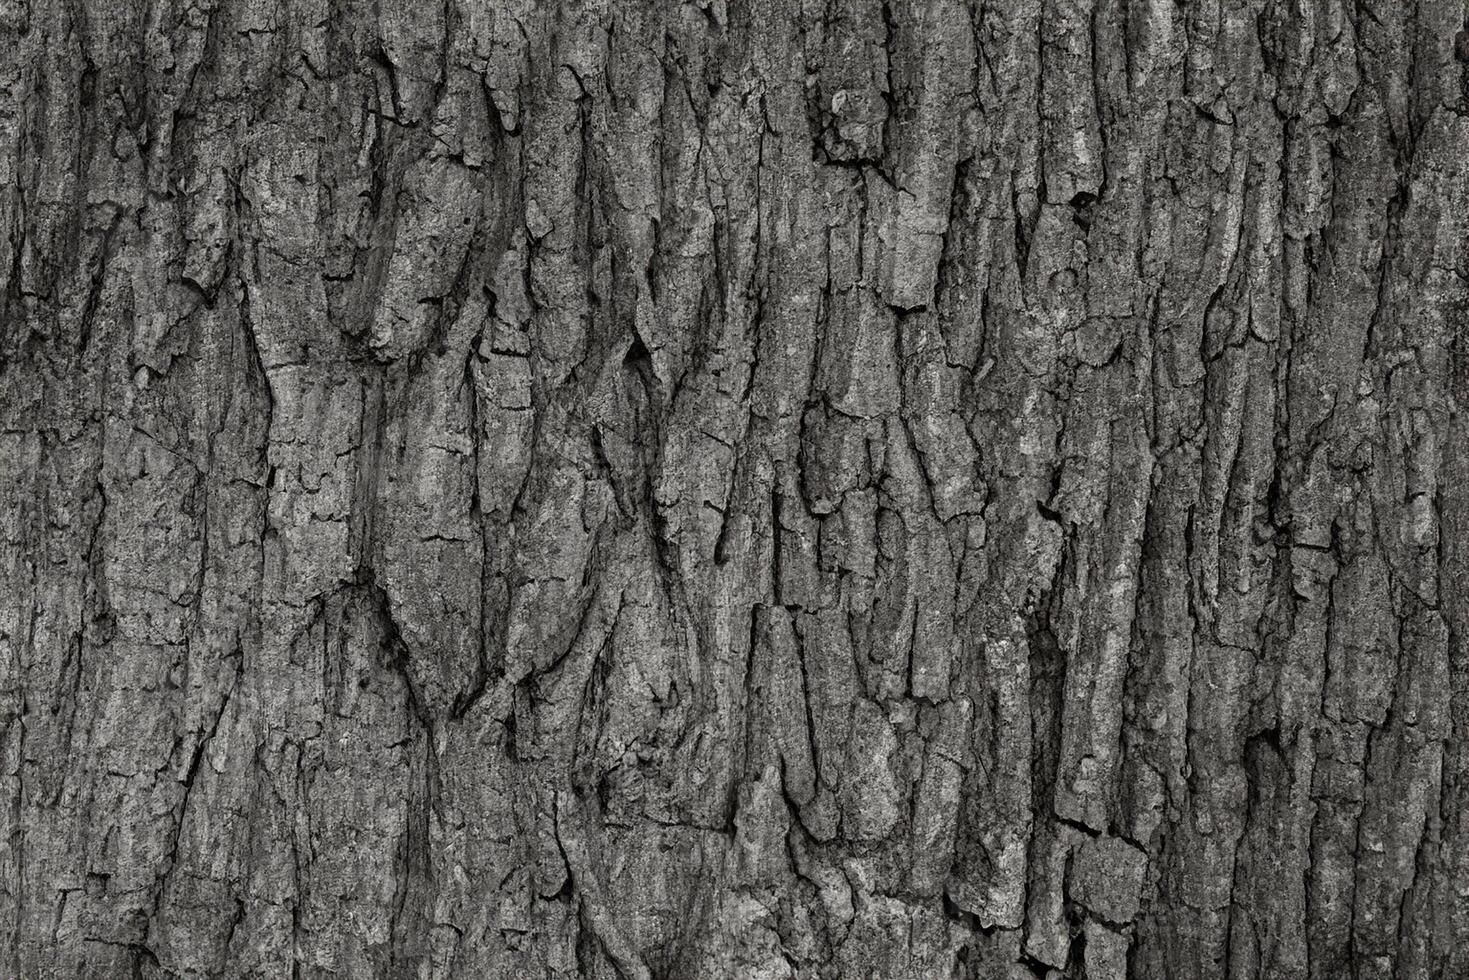 seco árvore latido textura e fundo, natureza conceito foto